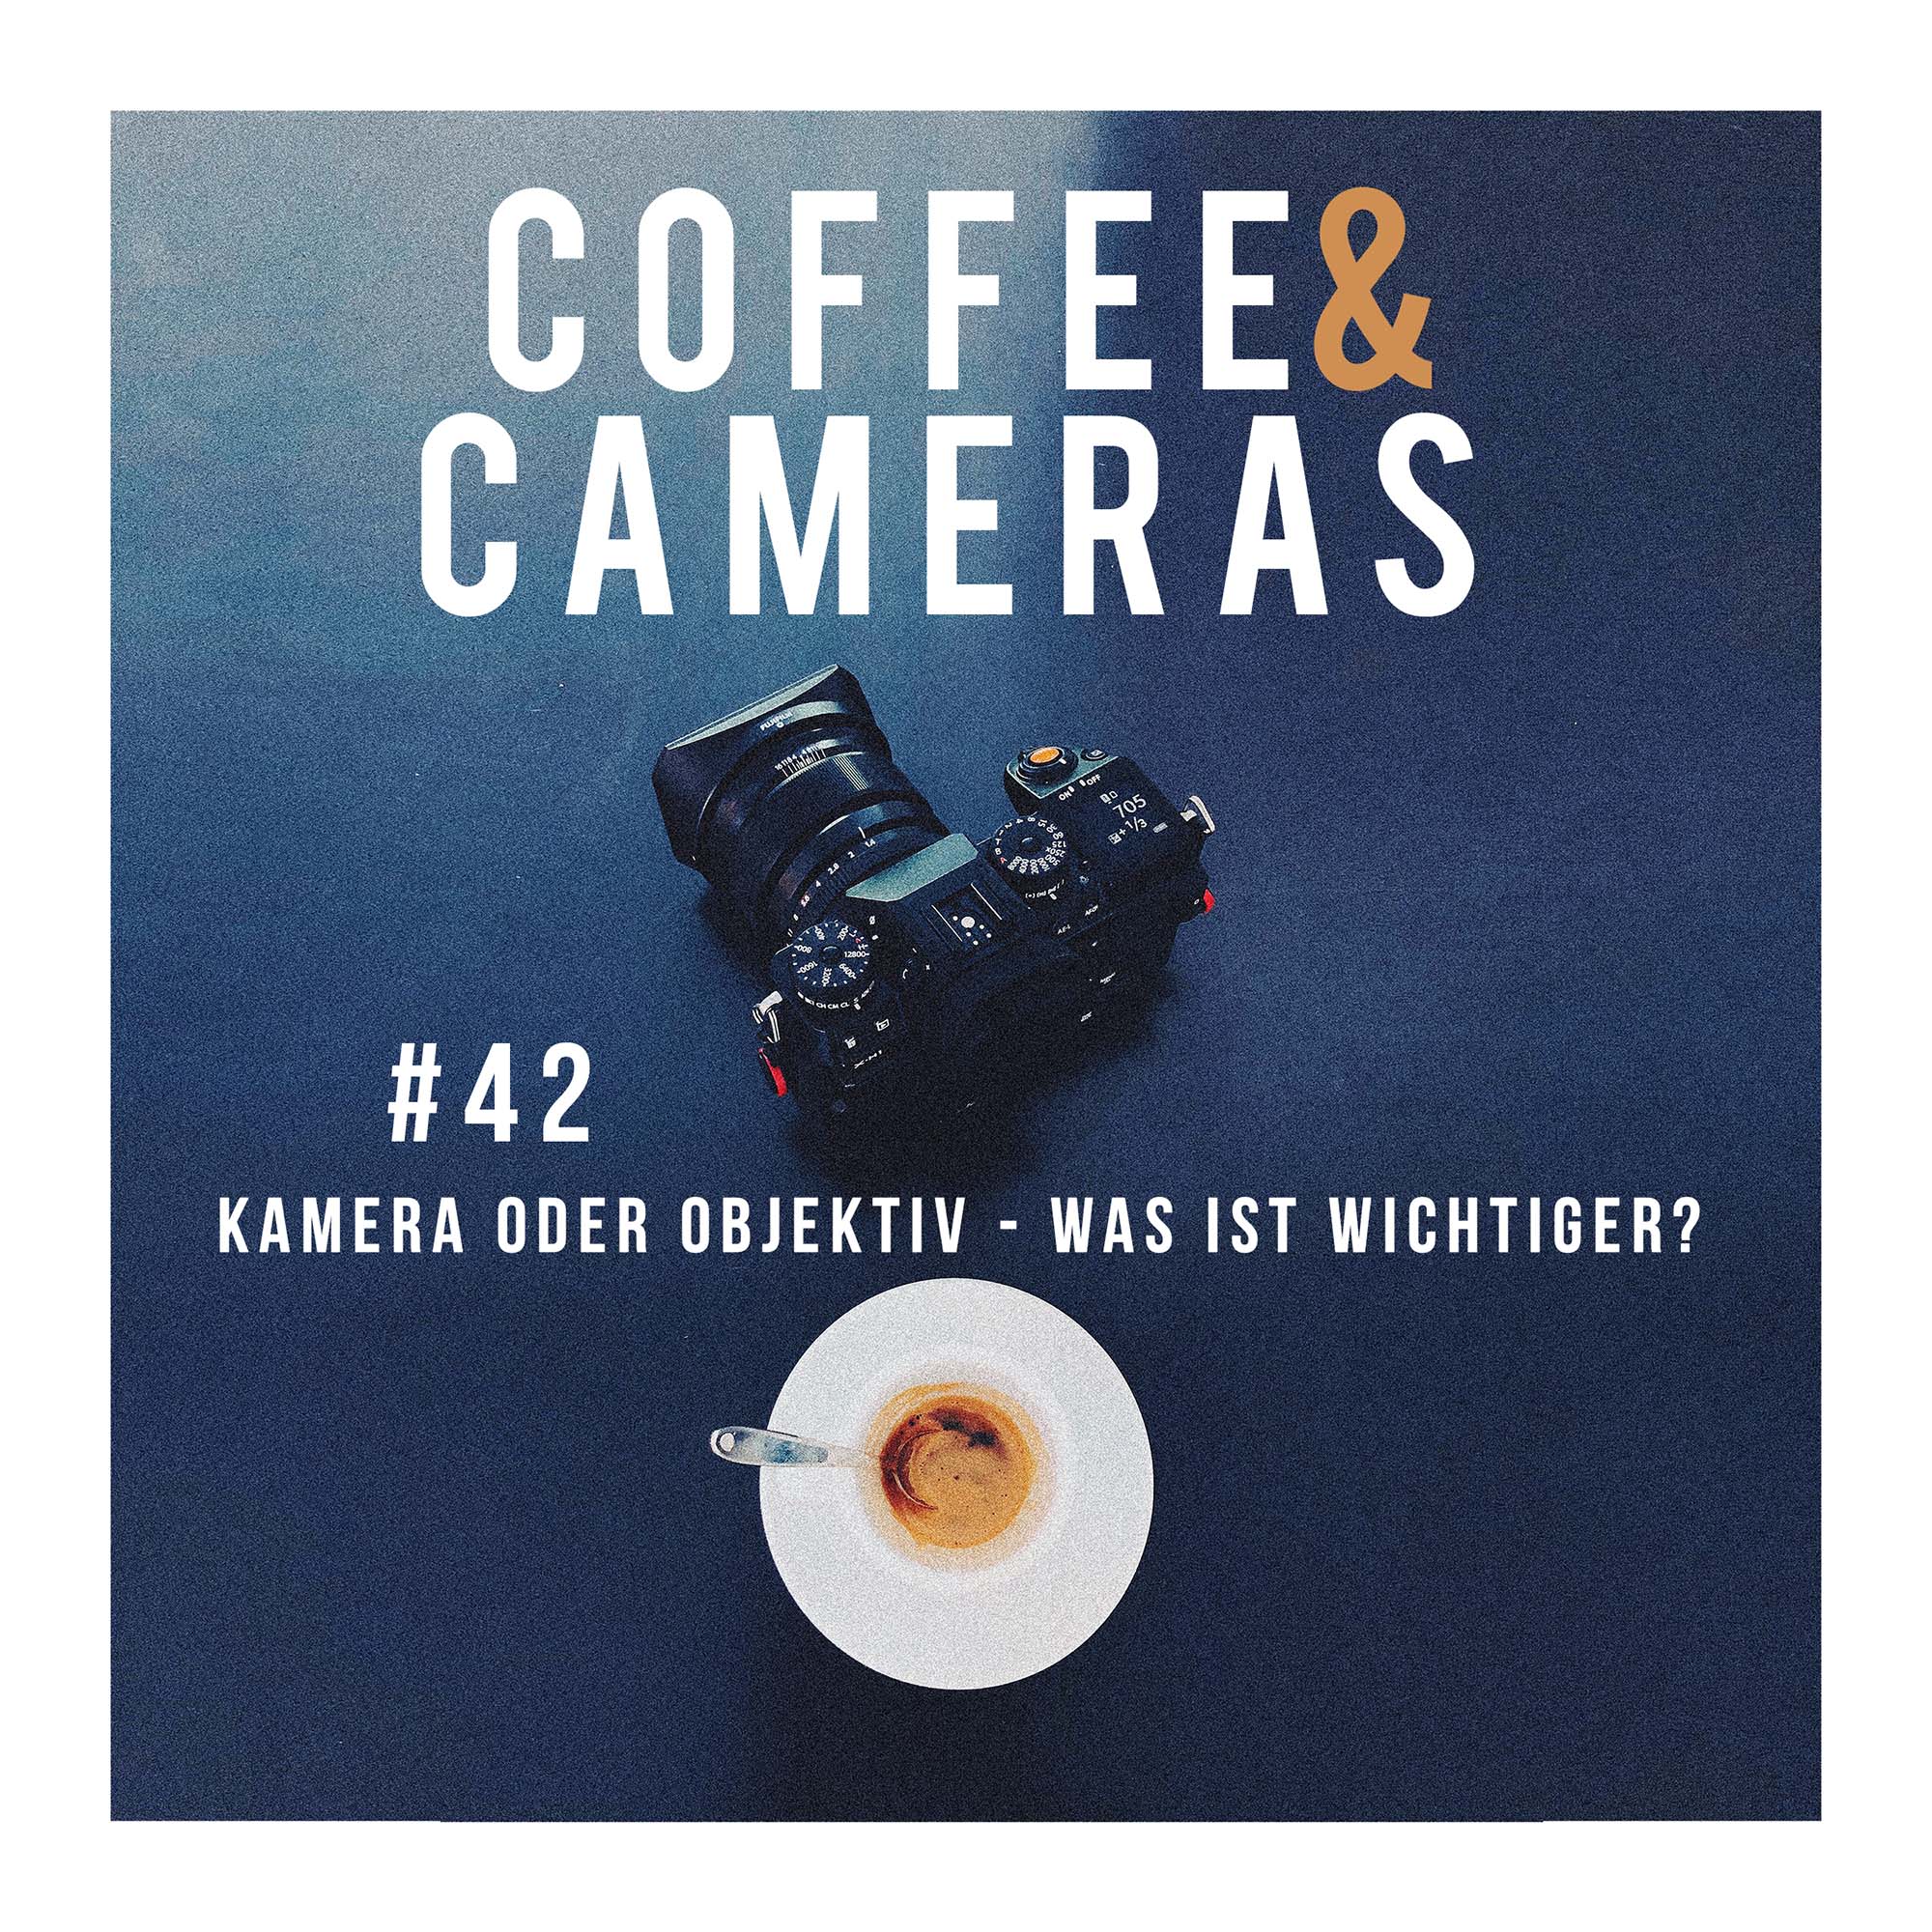 Episode 42: Kamera oder Objektiv - was ist wichtiger?